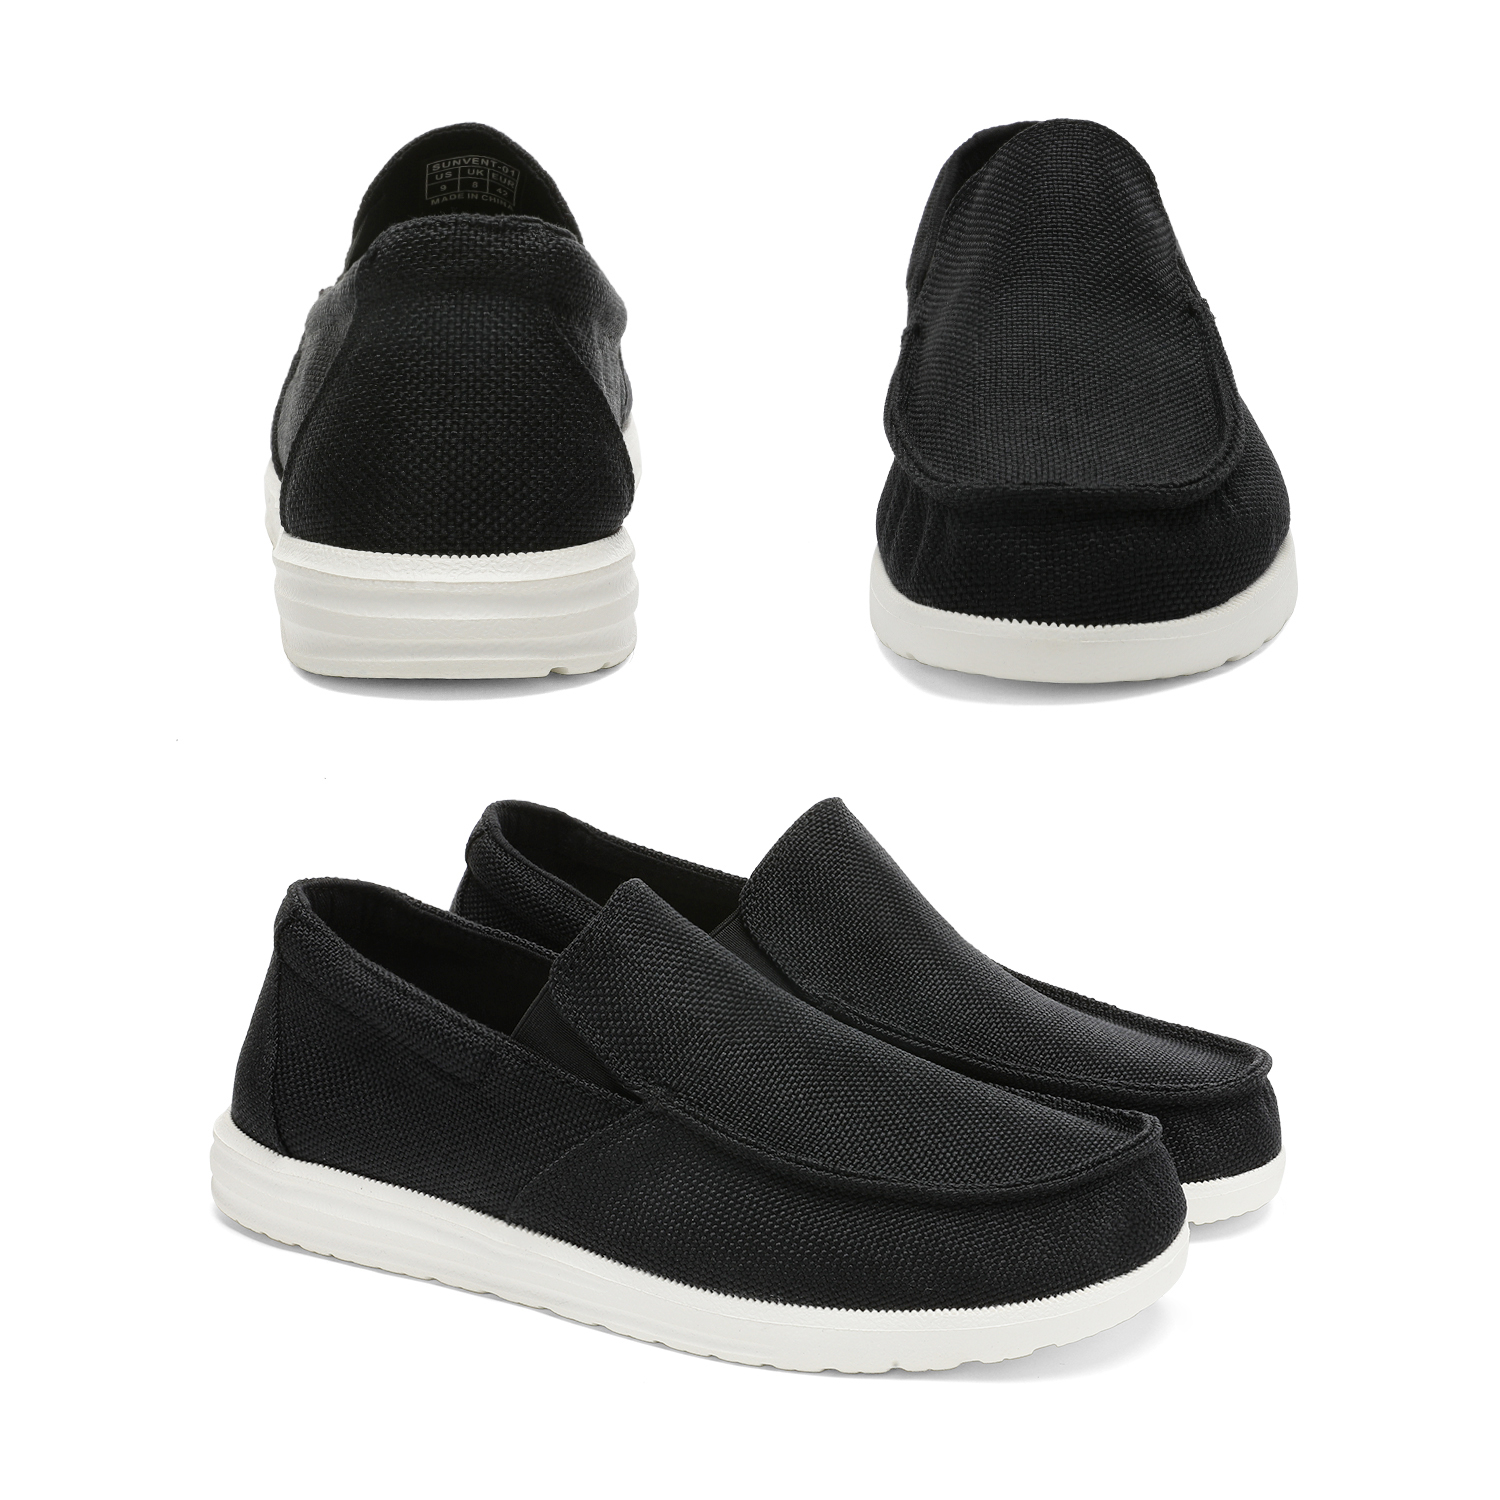 Bruno Marc Men's Slip On Loafer Walking Shoes SUNVENT-01 BLACK size 6.5 - image 4 of 5